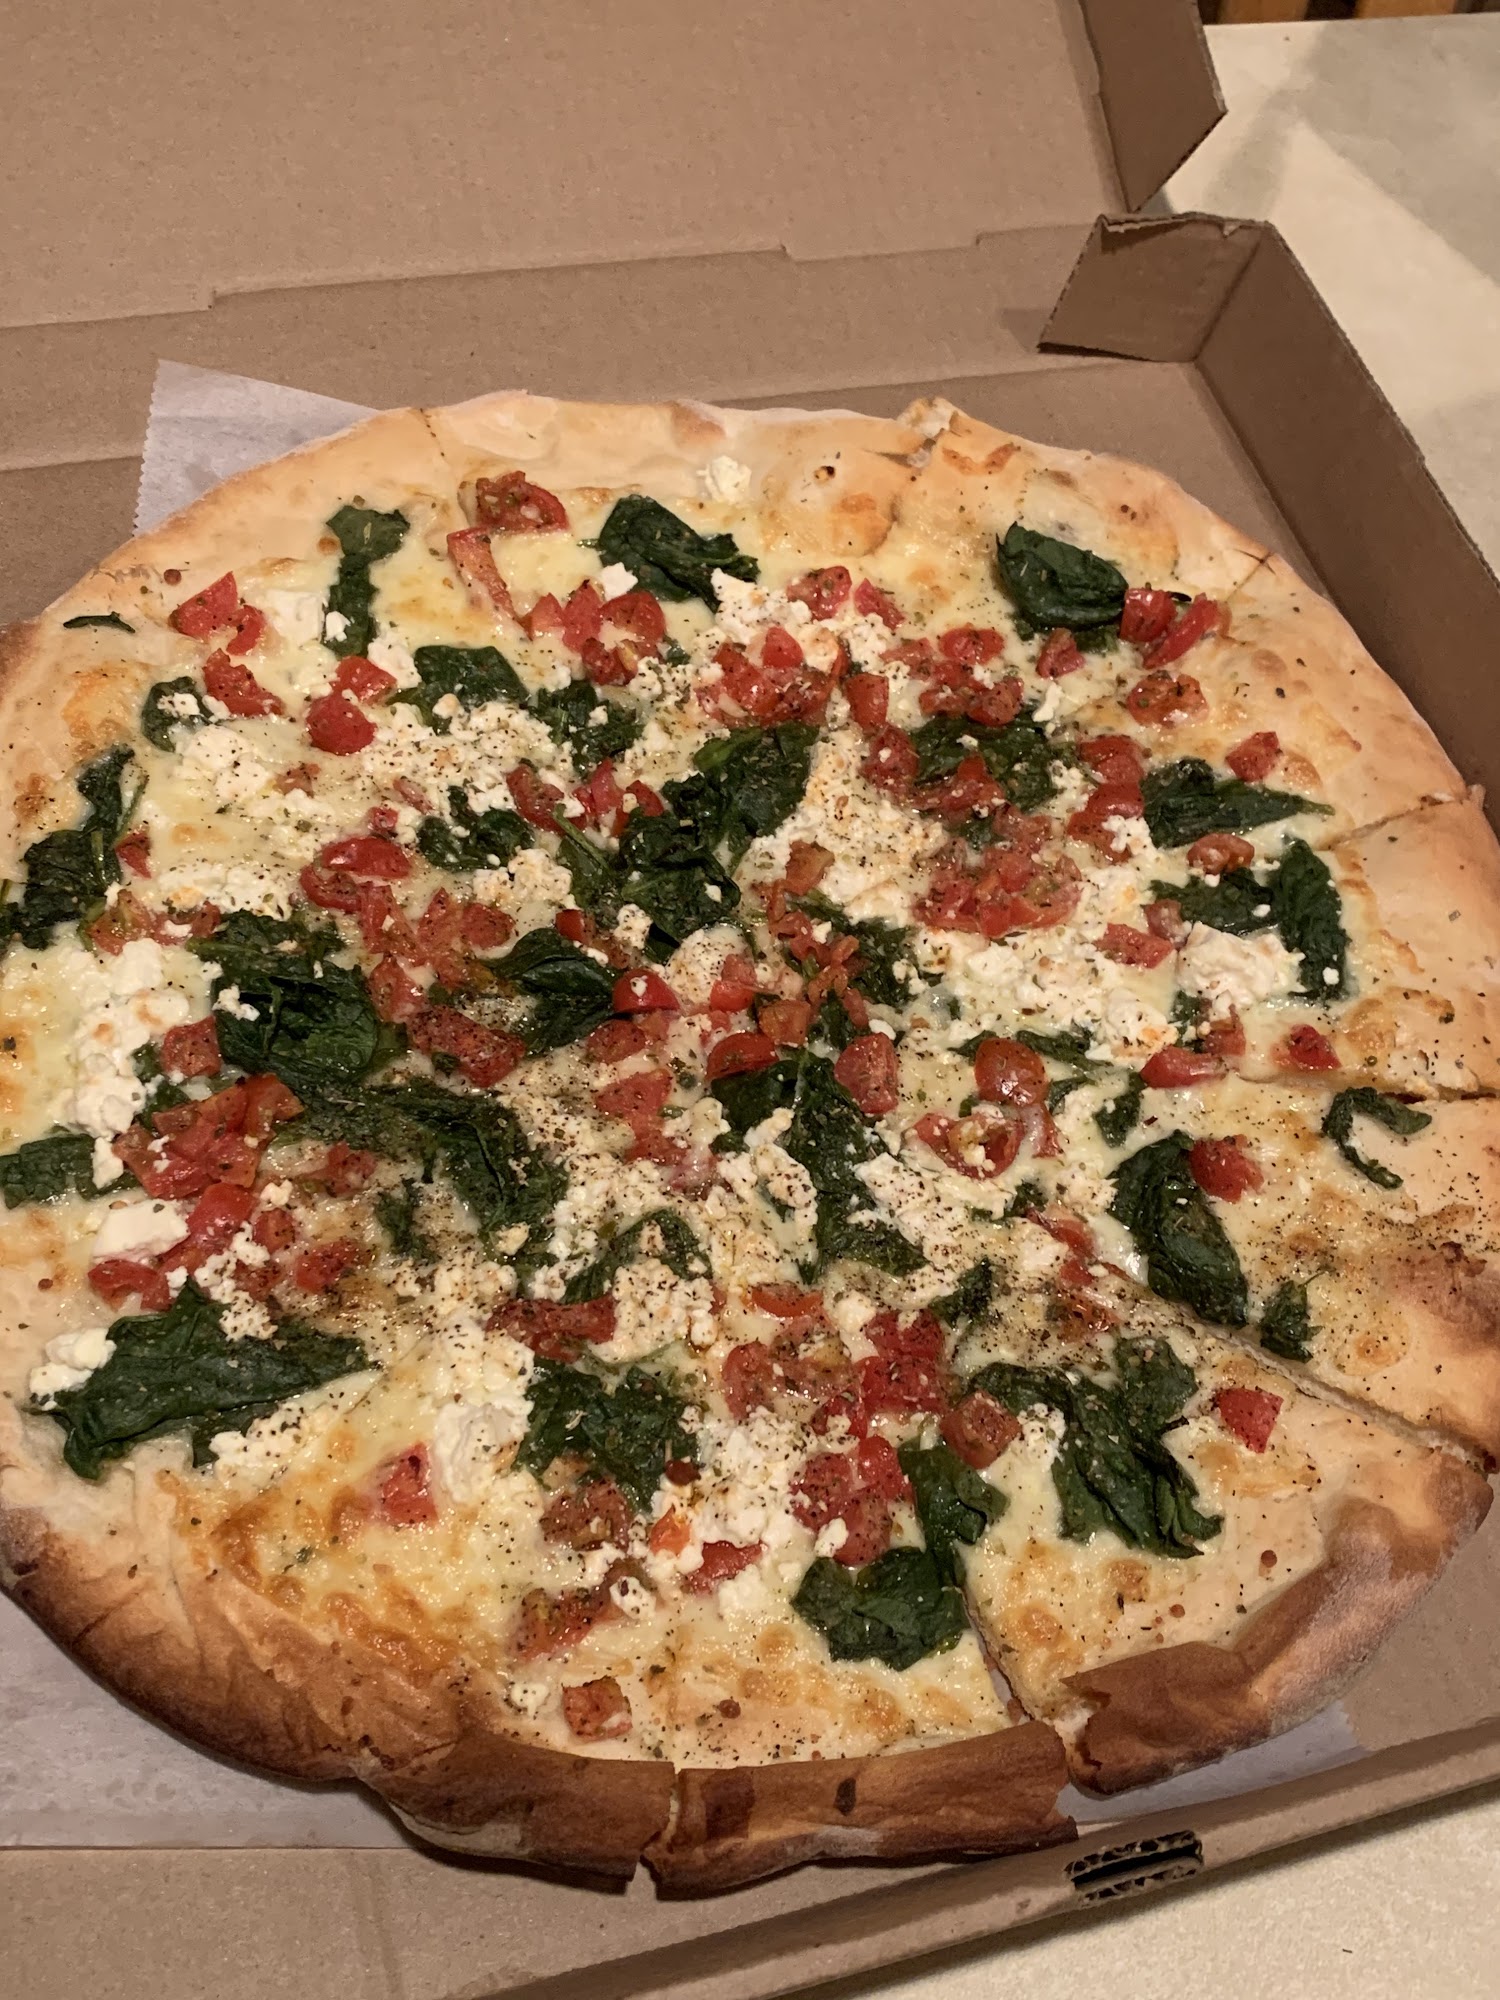 Bernie's Pizza